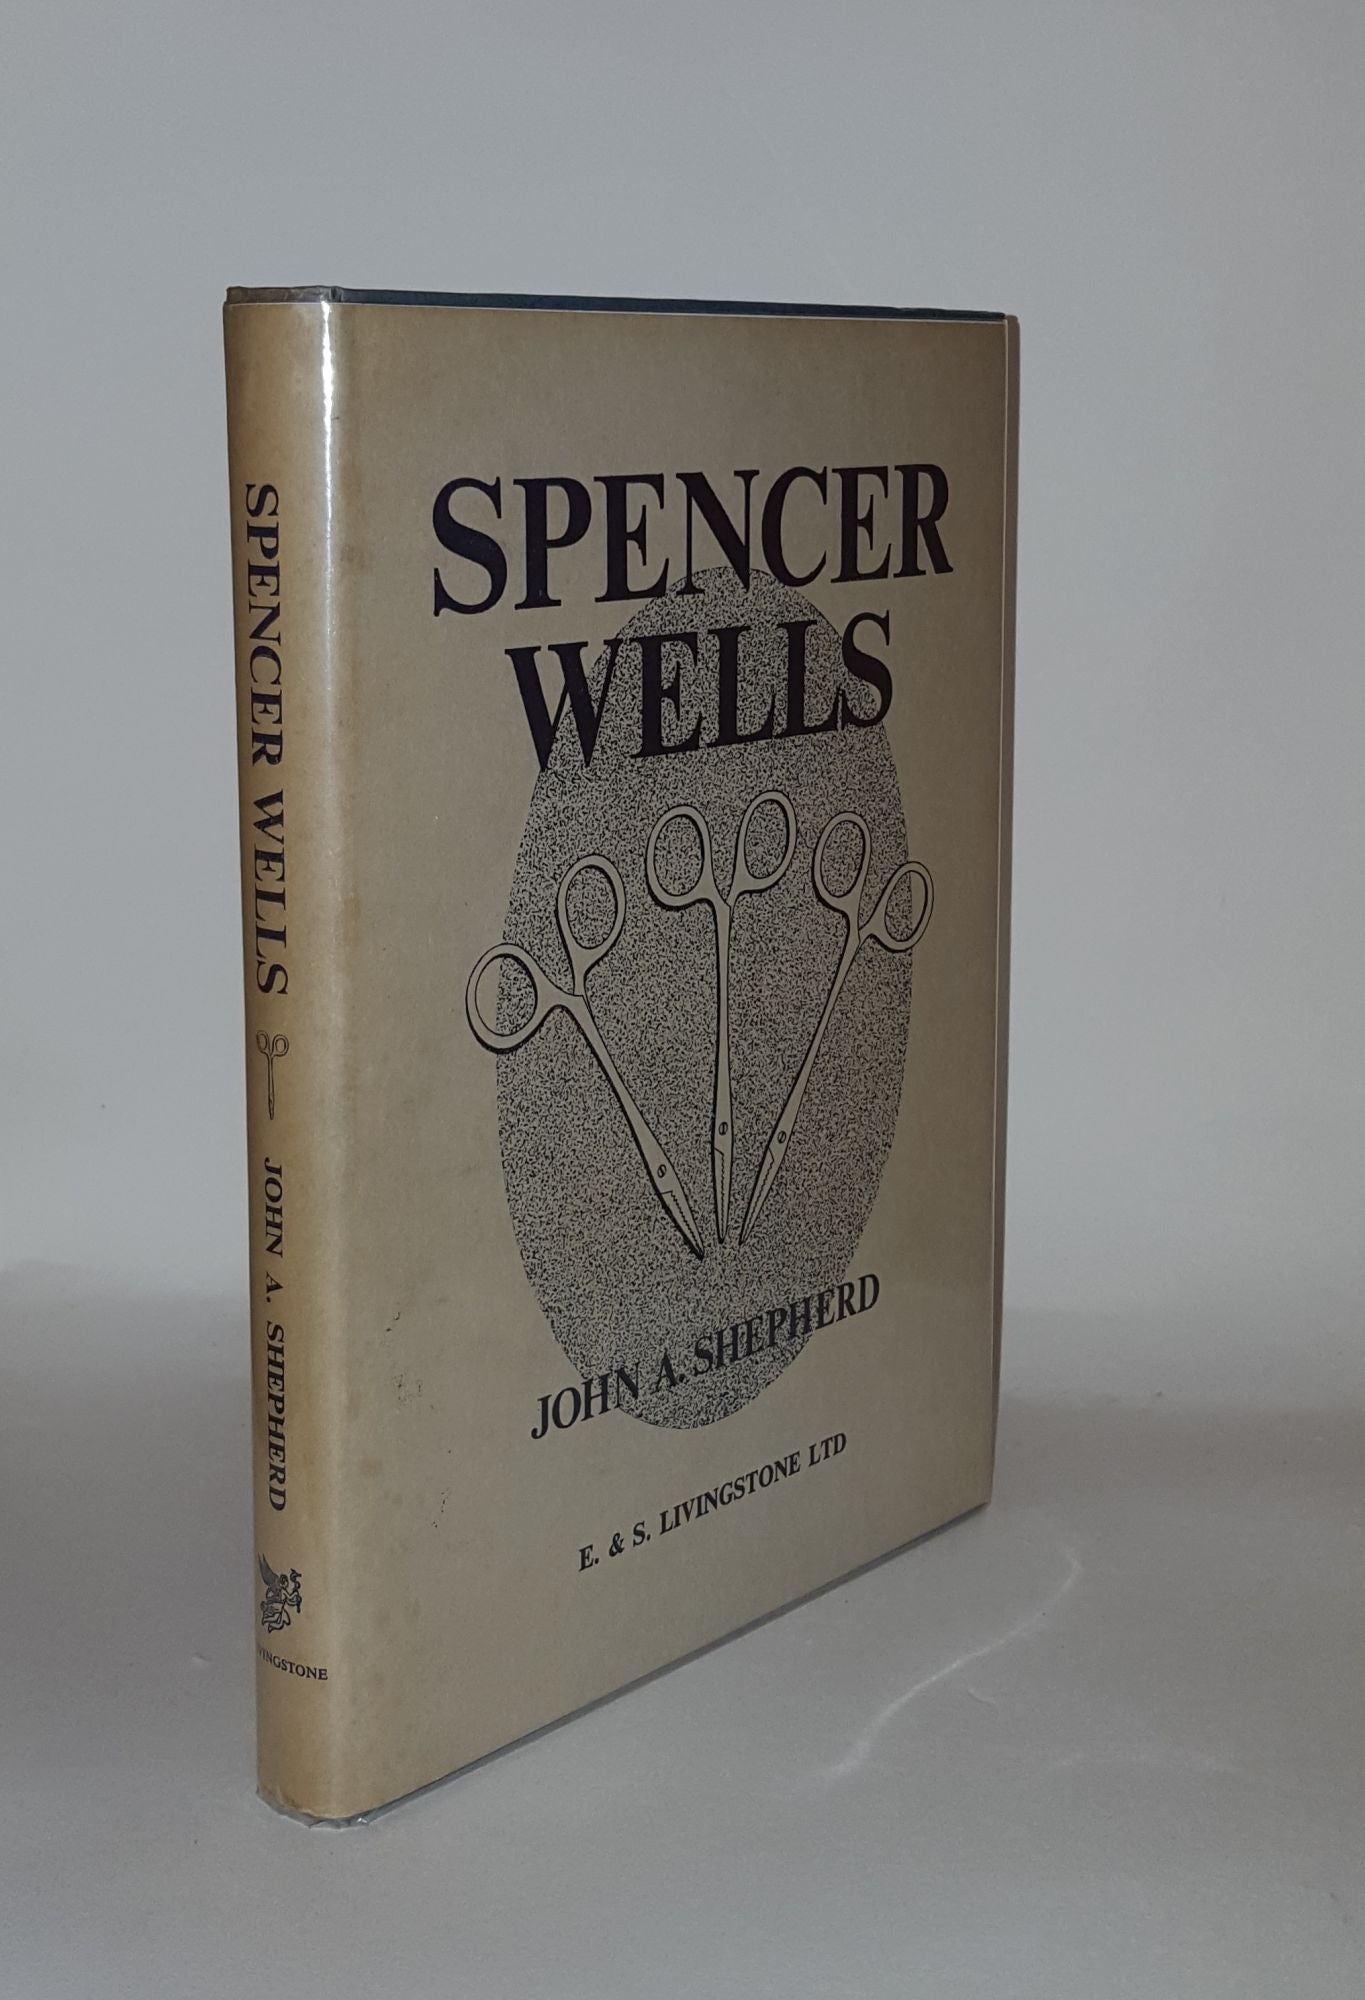 SHEPHERD John A. - Spencer Wells